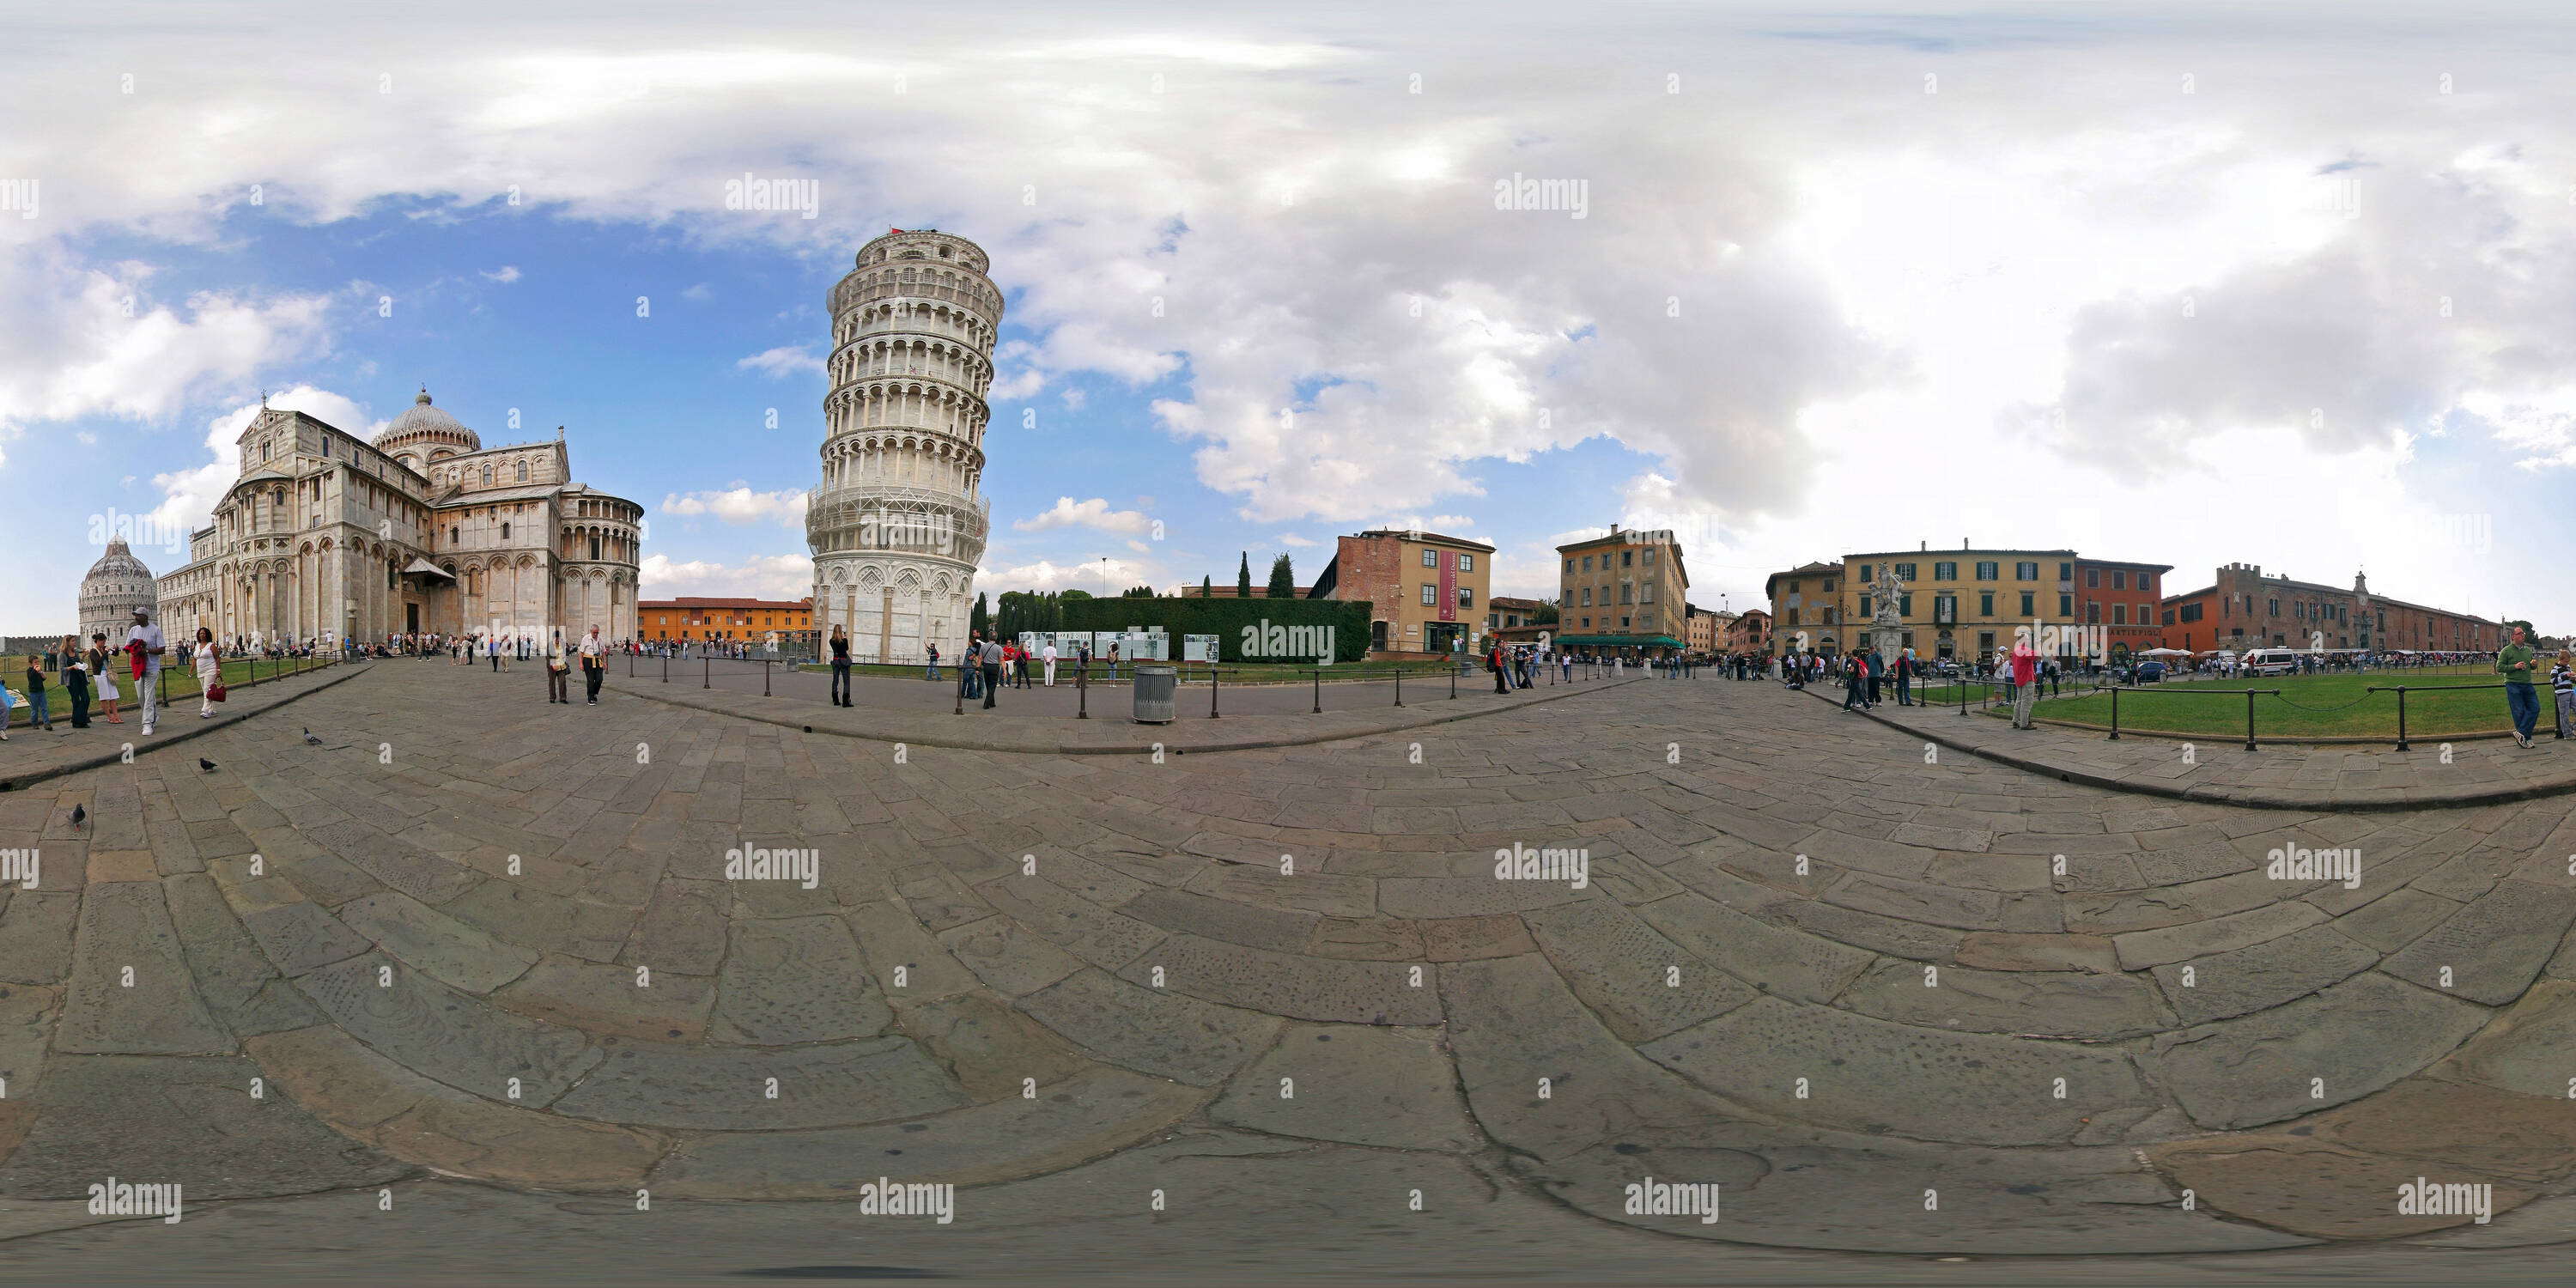 Vue panoramique à 360° de Piza